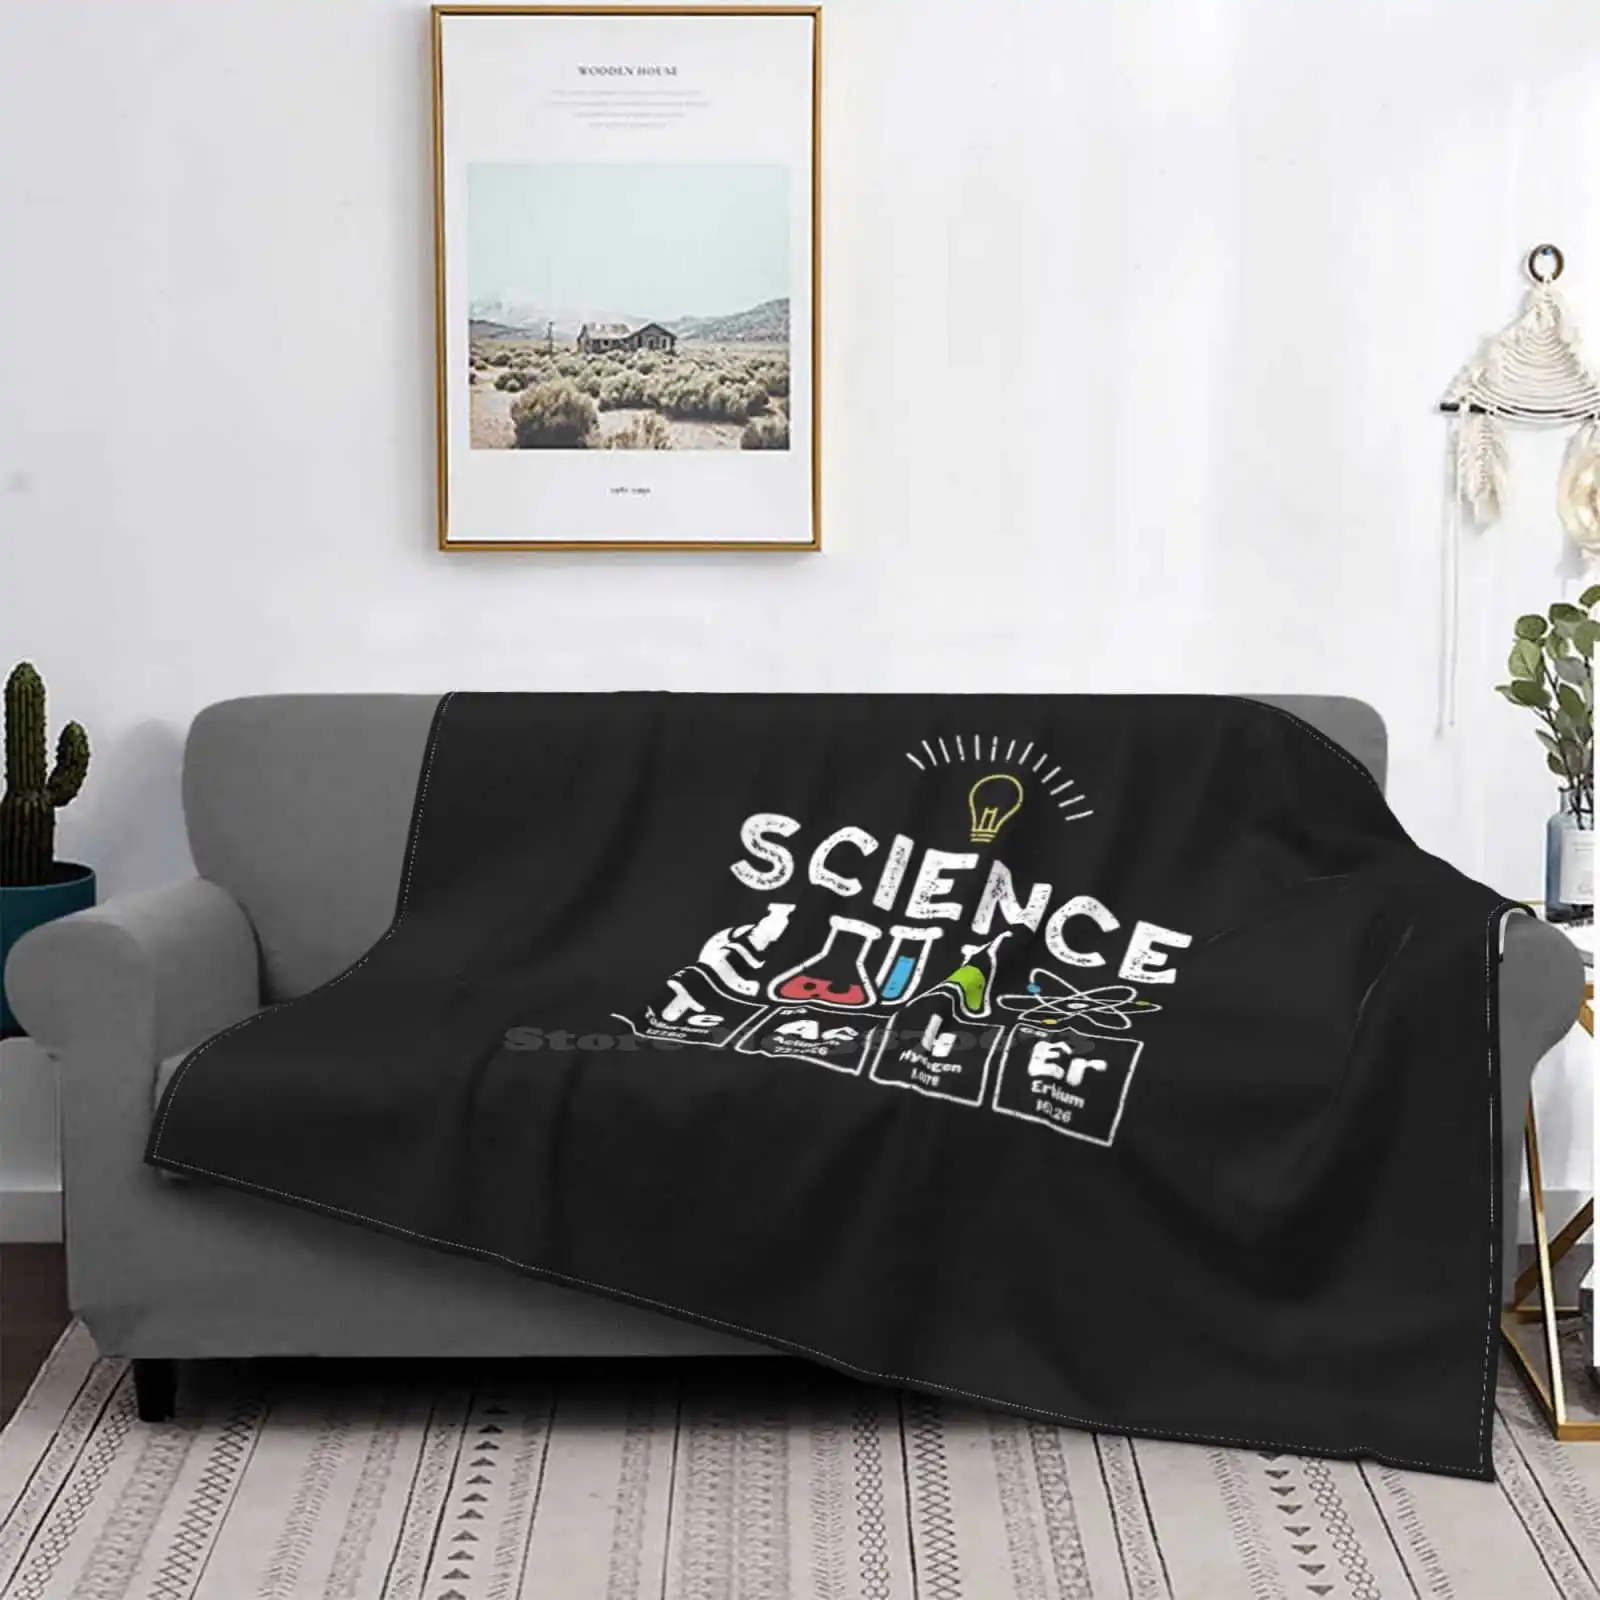 

Научный учитель-наука четыре сезона, удобное теплое мягкое одеяло, научное пространство, стандартная биология, Феминизм